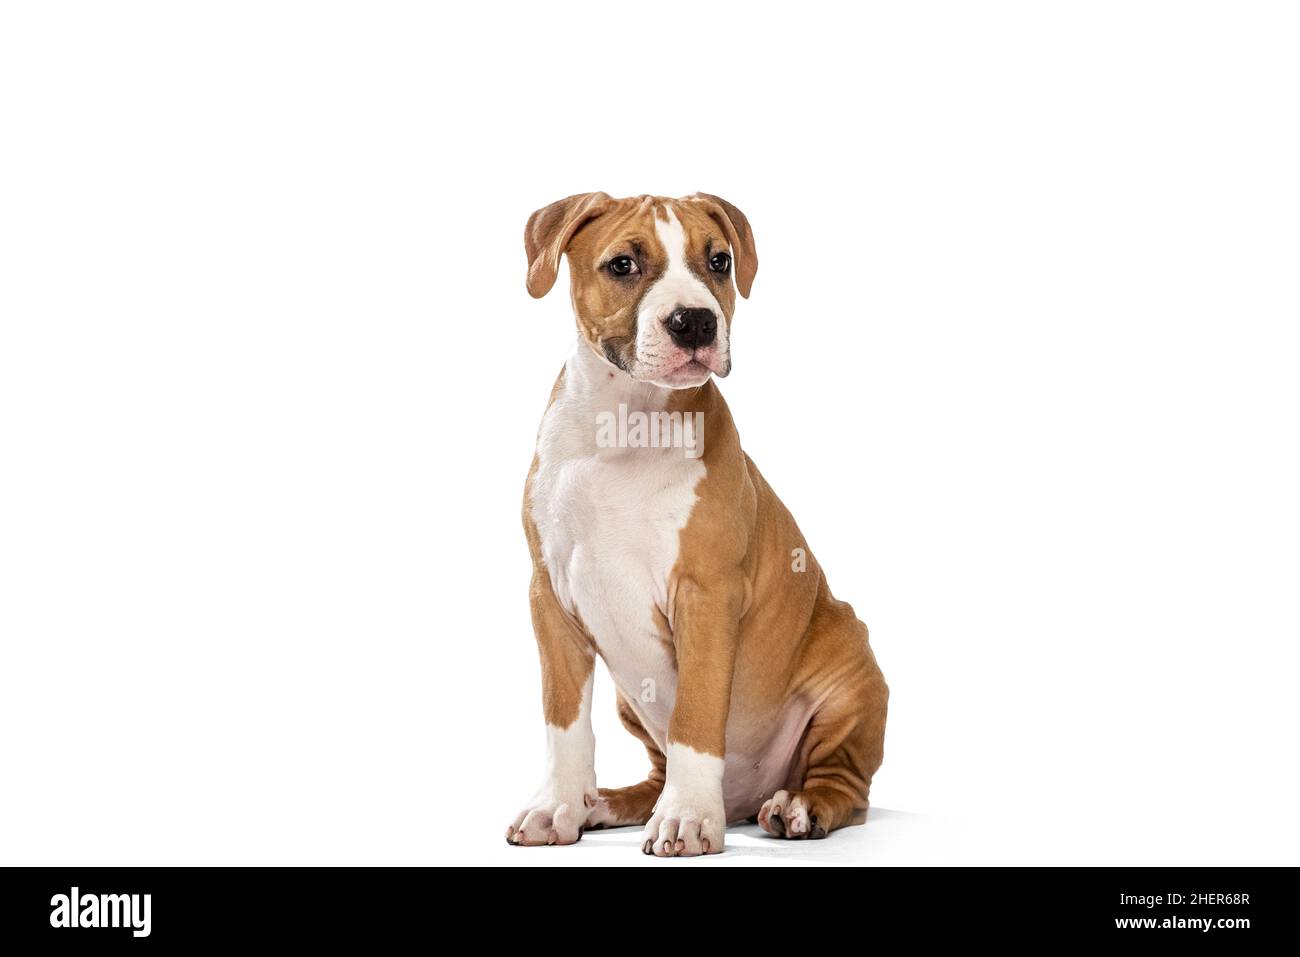 Adorable chien de race, le Terrier américain du Staffordshire, assis sur un sol isolé sur fond blanc.Concept de beauté, race, animaux de compagnie, vie animale. Banque D'Images